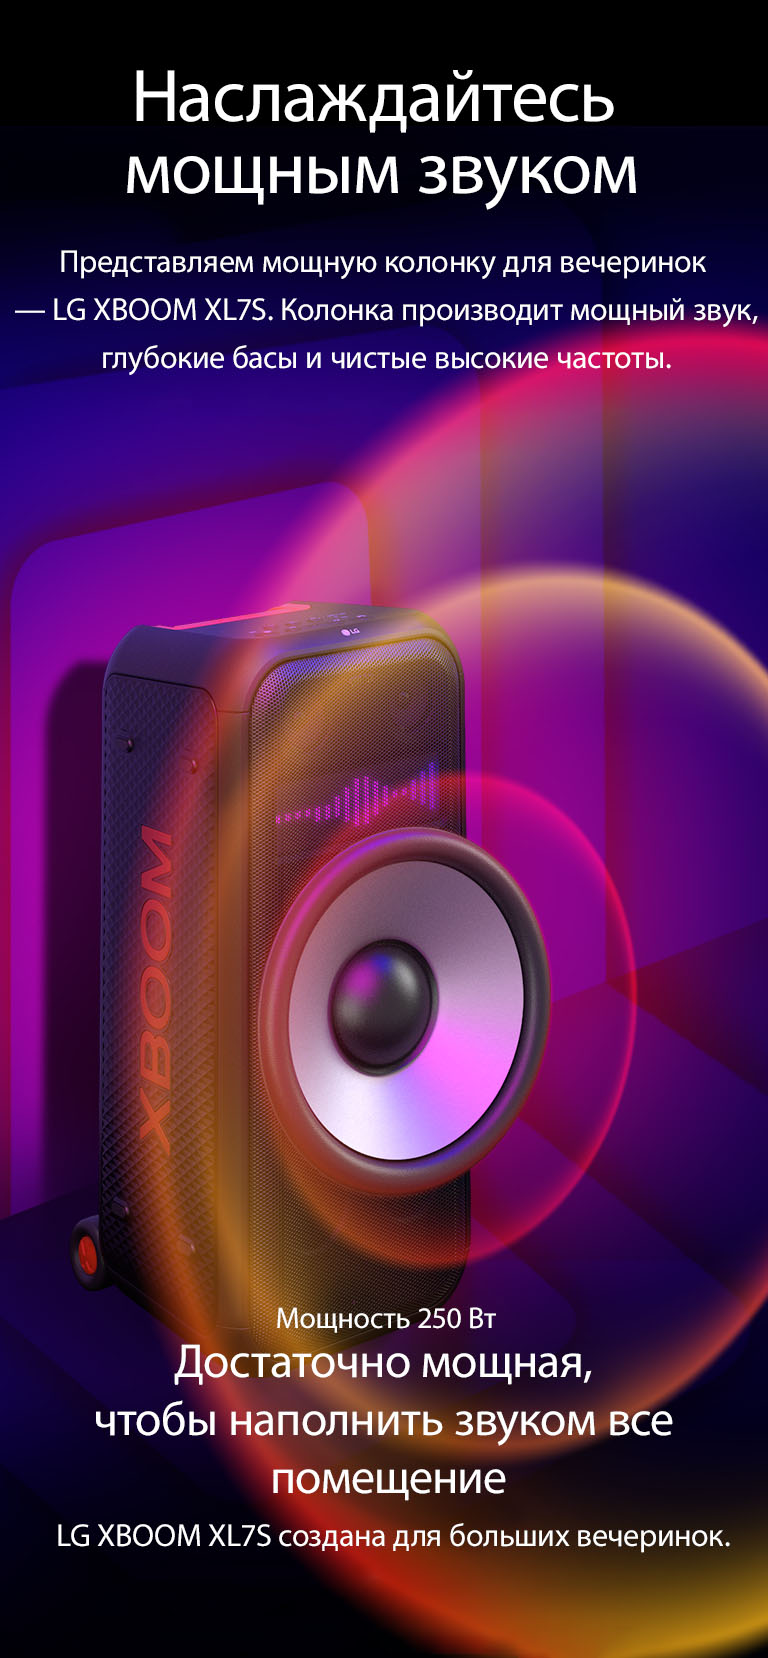 LG XBOOM XL7S в бесконечном пространстве. На стене изображена квадратная звуковая графика. Большой 8-дюймовый низкочастотный динамик увеличен, подчеркивая большую мощность колонки 250 Вт. От низкочастотного динамика исходят звуковые волны.